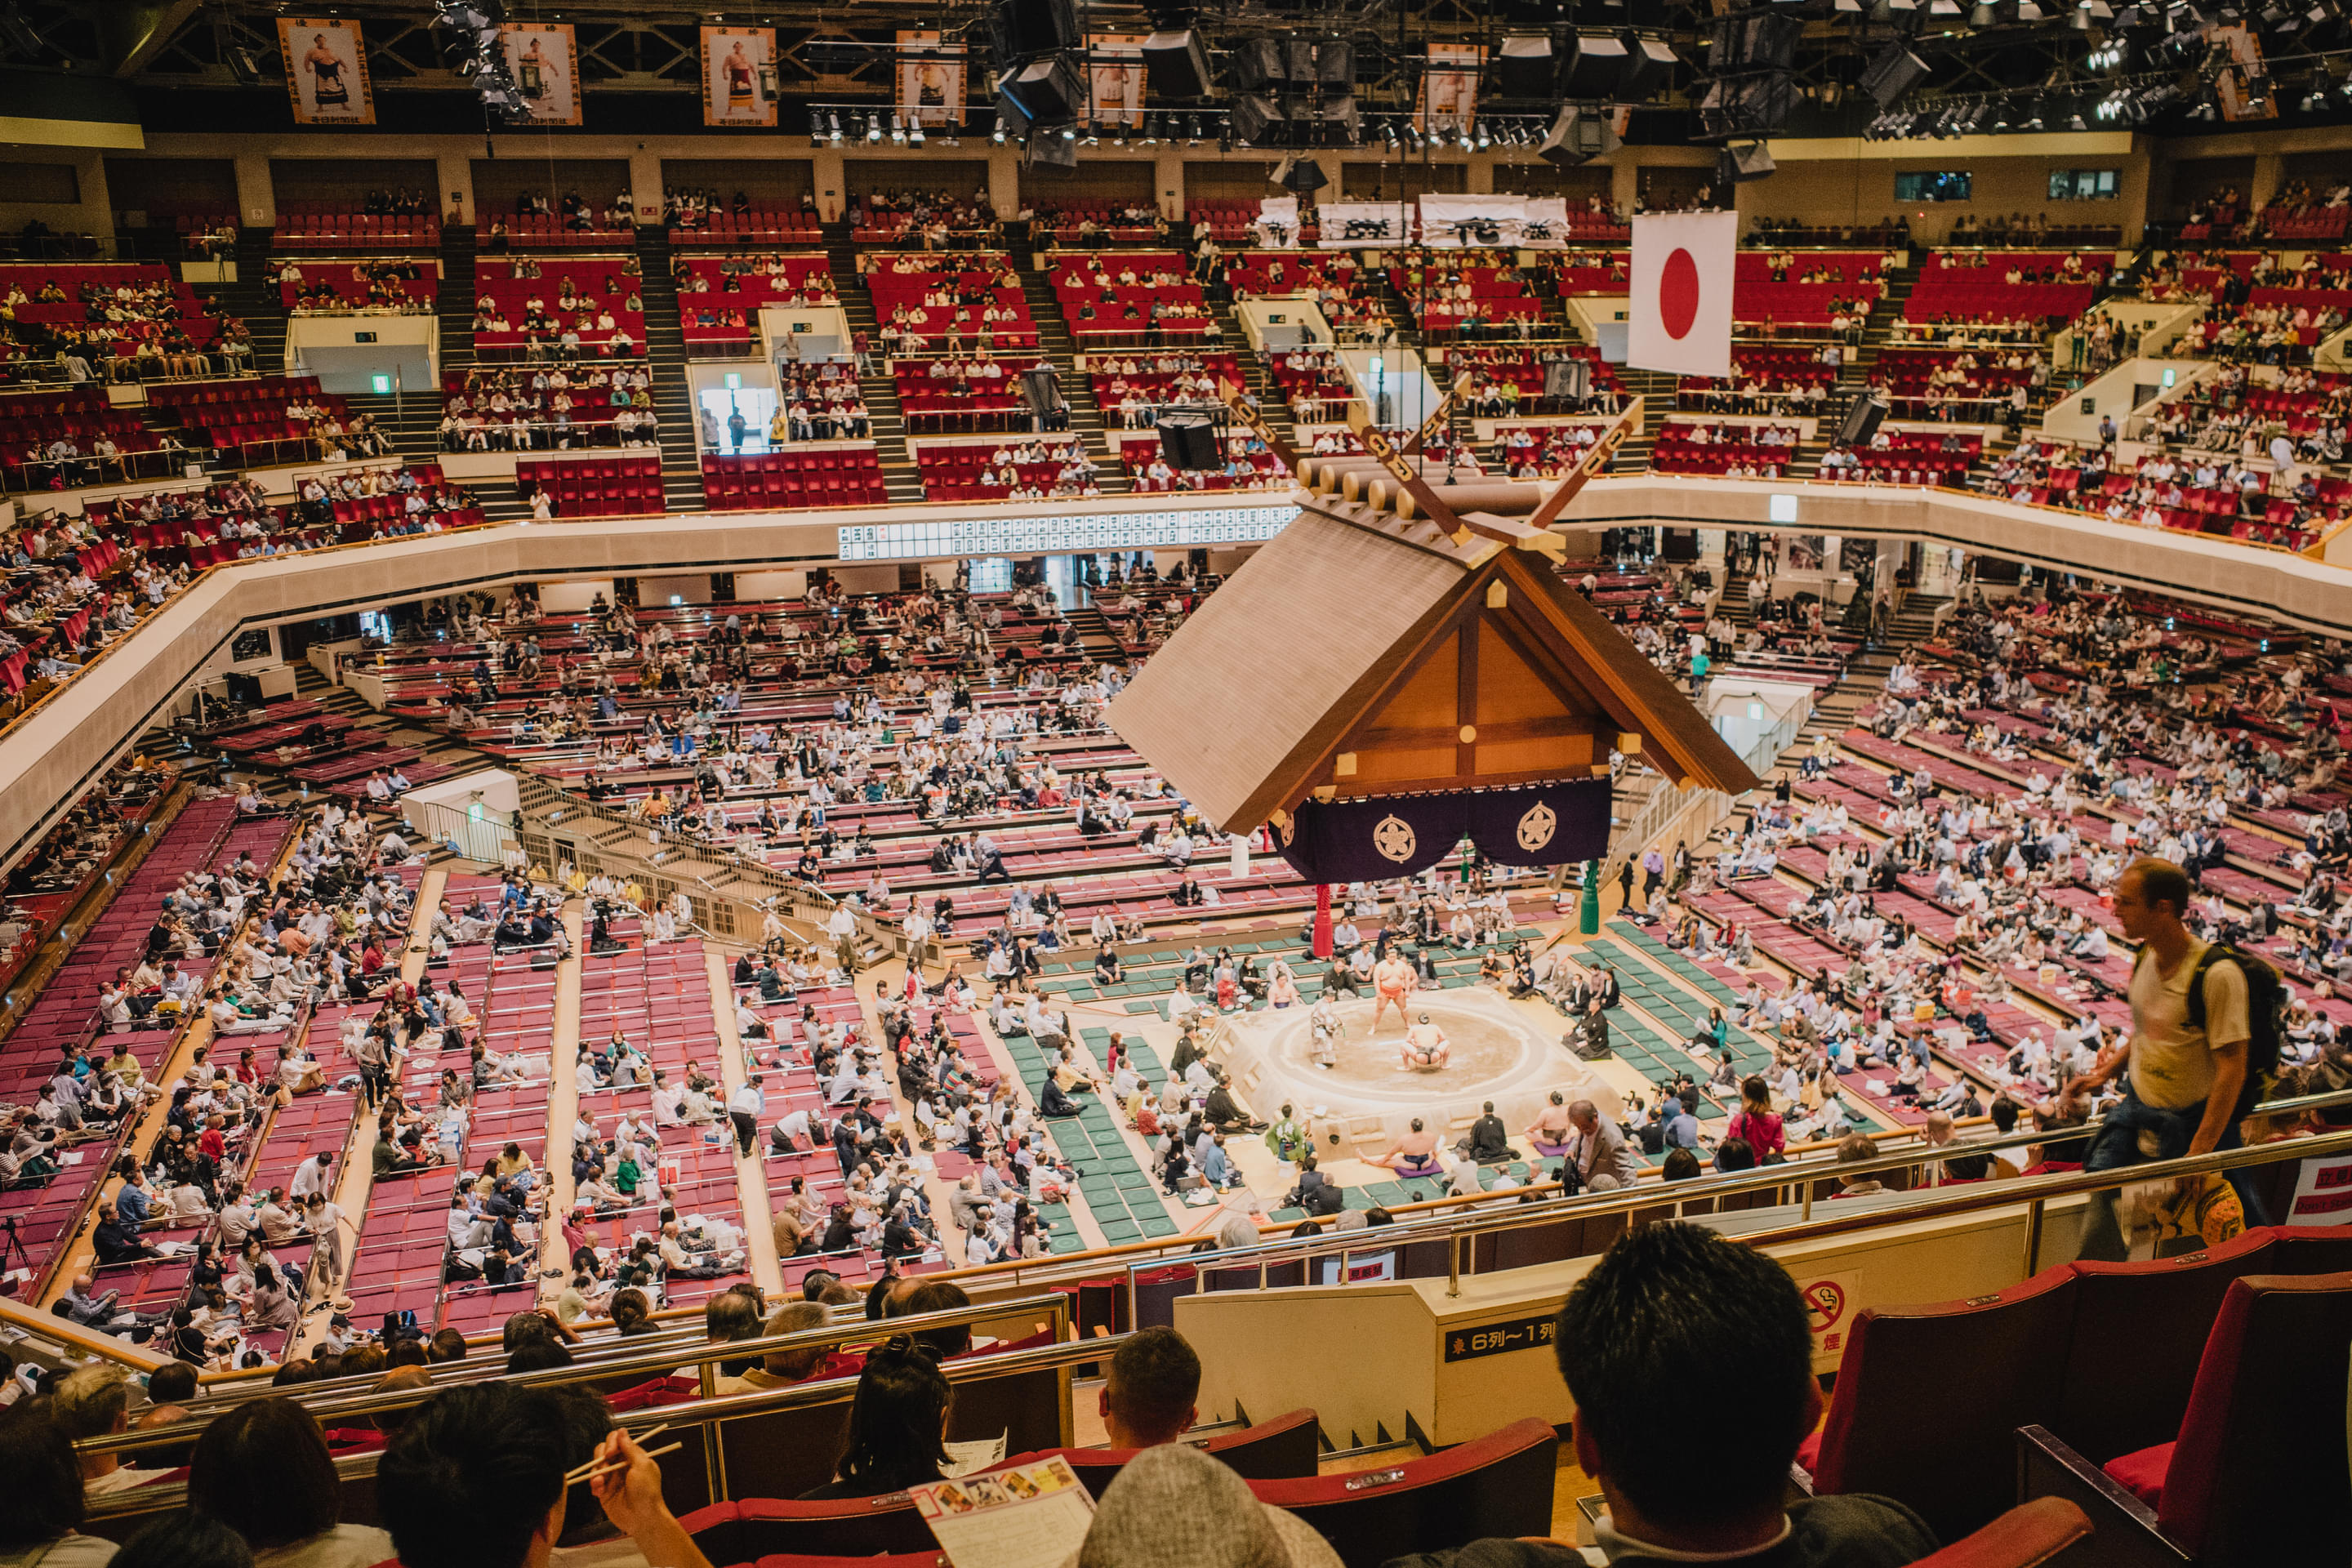 Ryogoku Kokugikan National Sumo Arena Overview